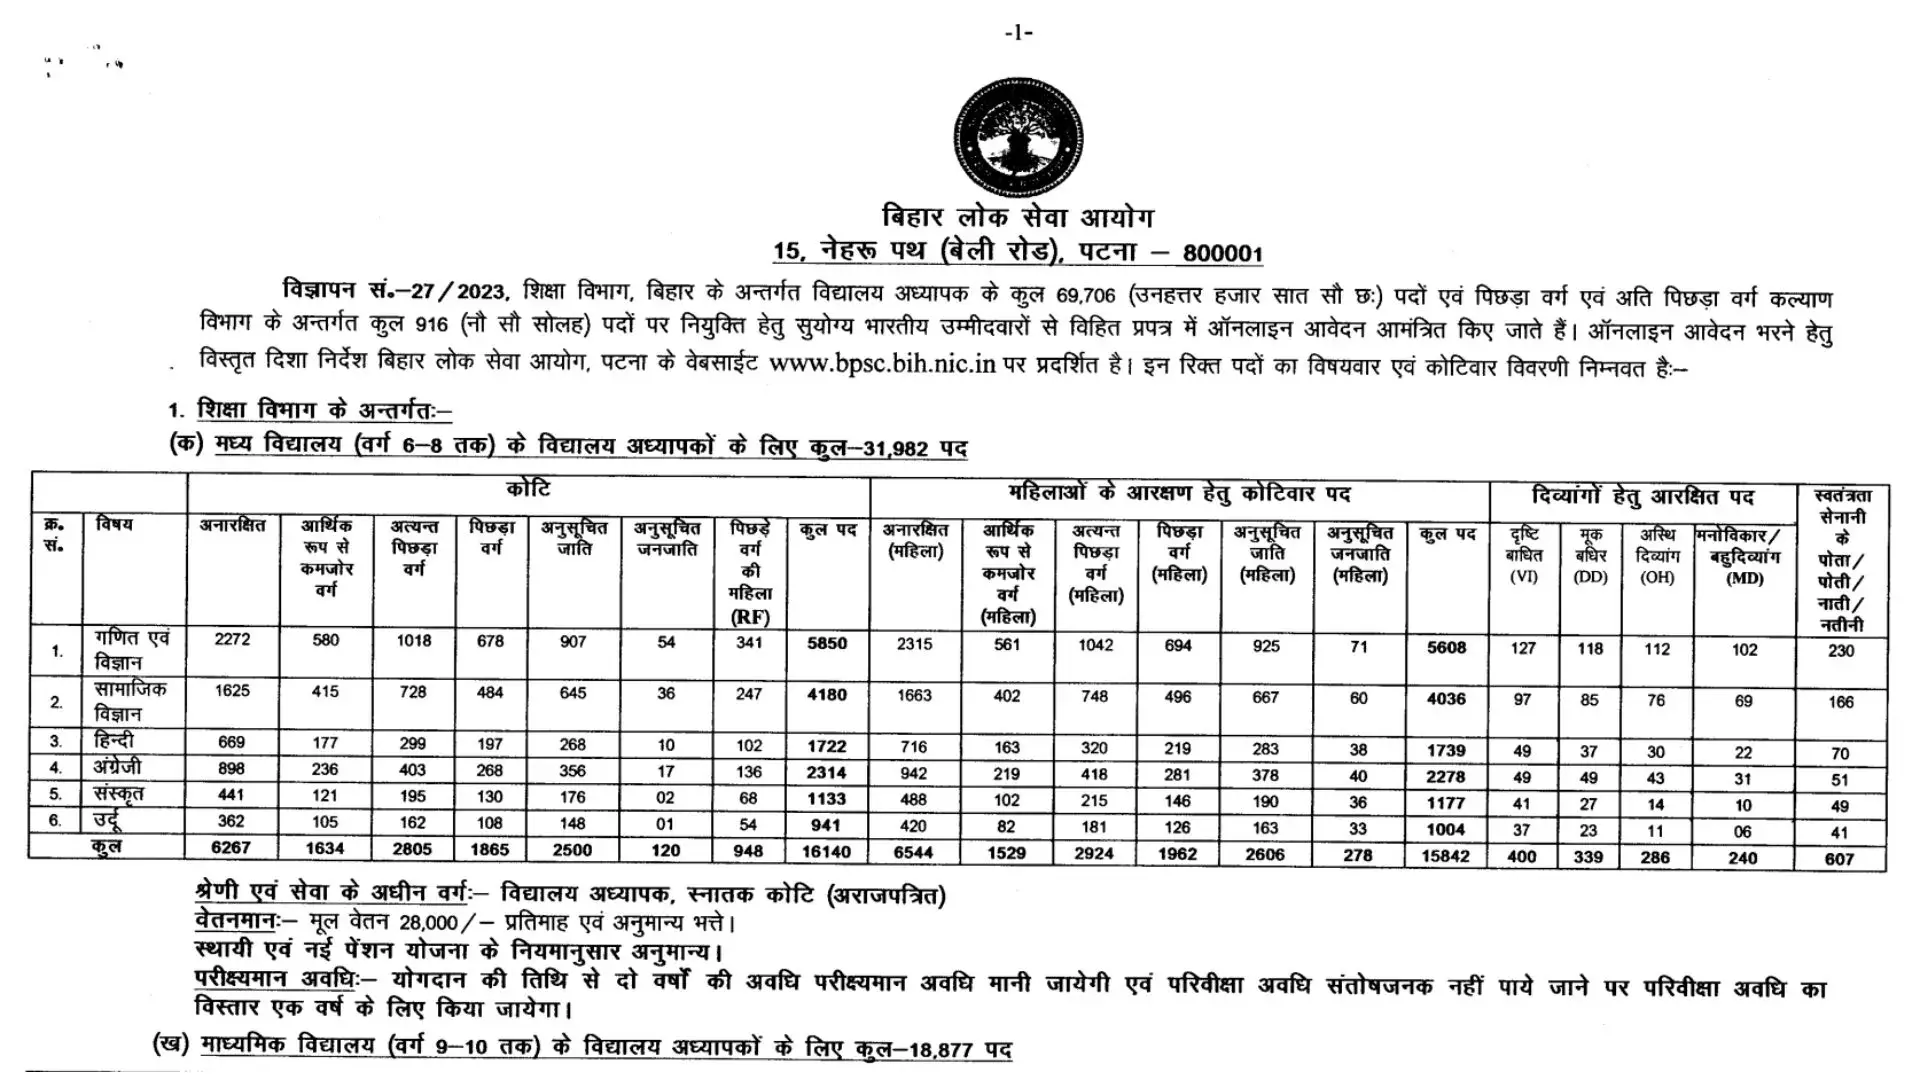 BPSC Bihar Teacher Recruitment 2023 Notification Released [69706 Vacancies]